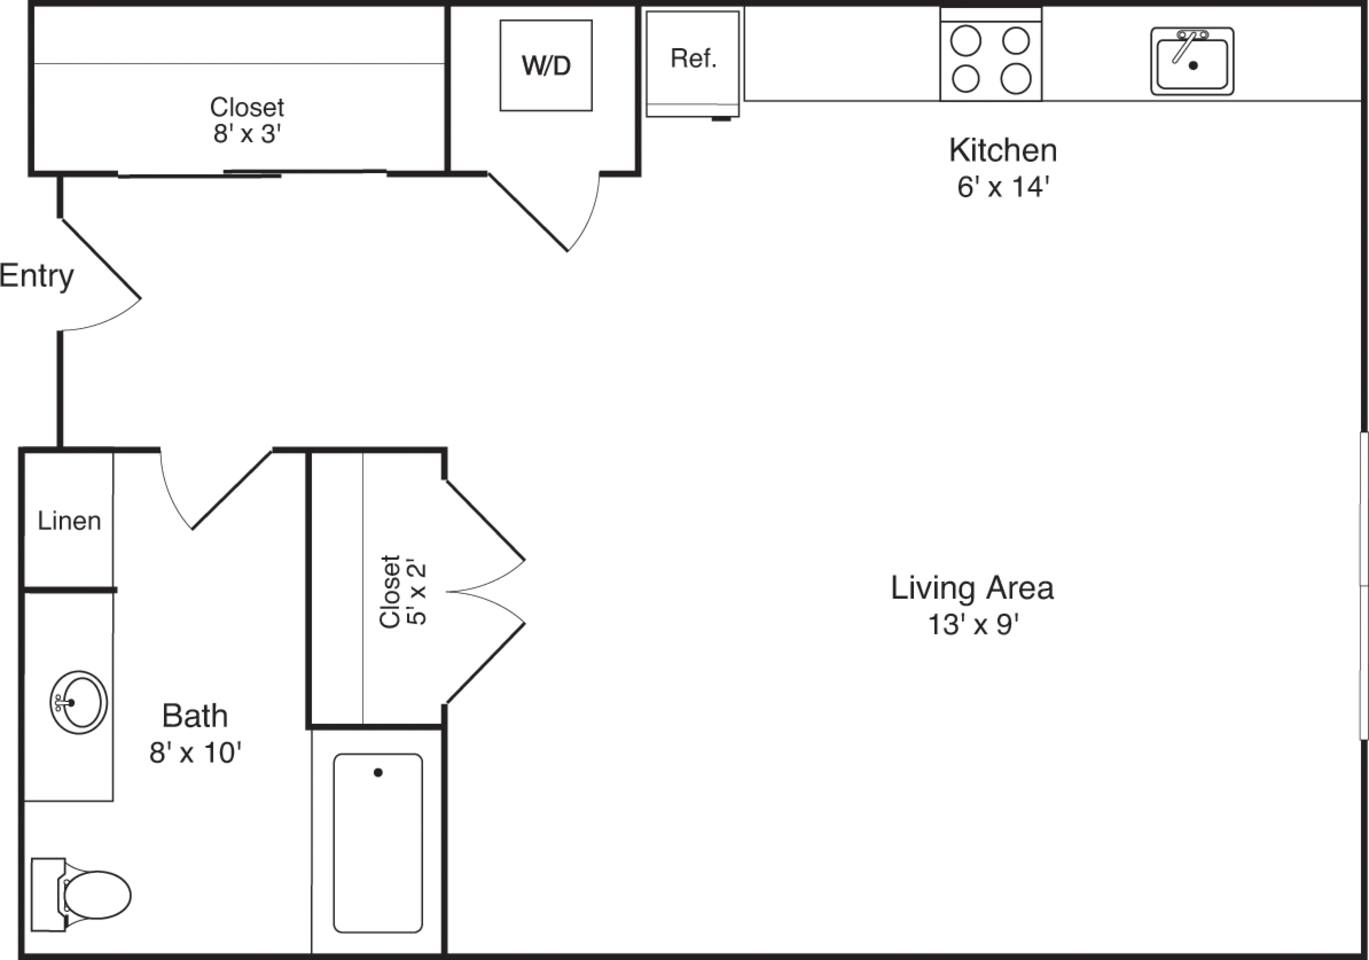 Floorplan diagram for S4, showing Studio